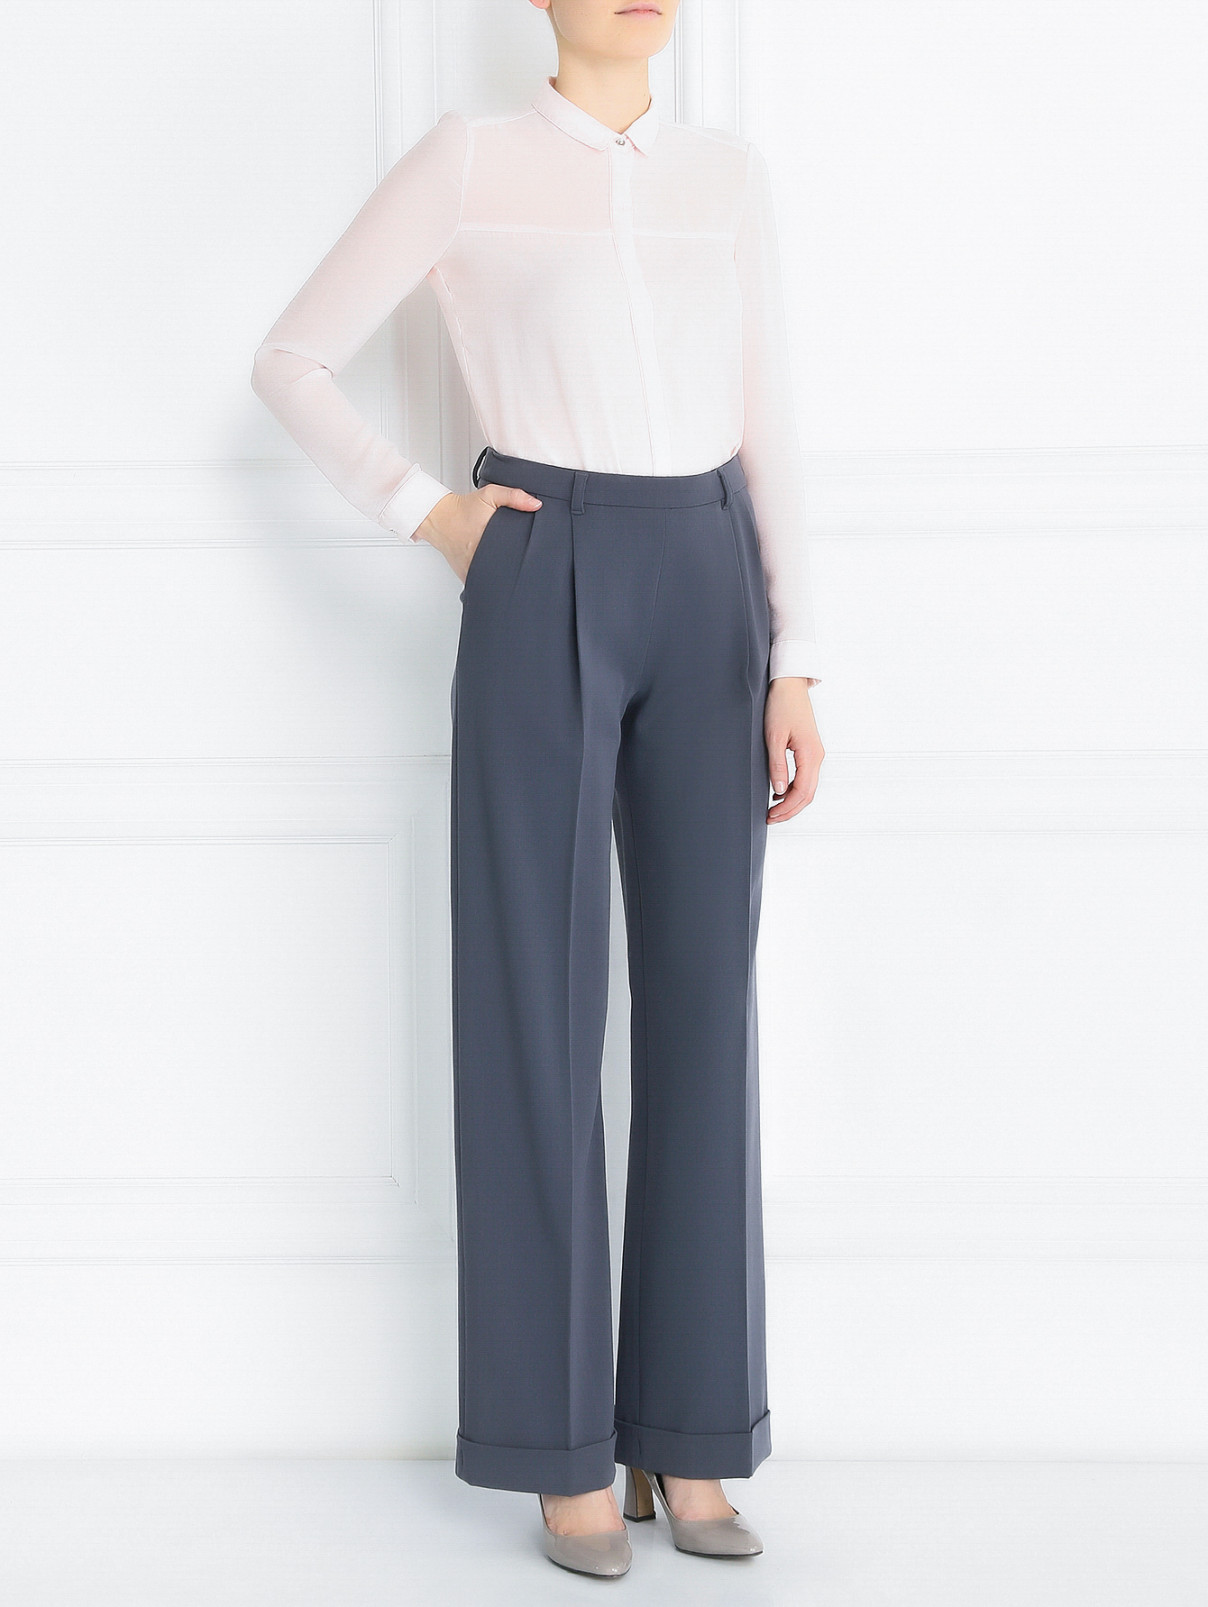 Широкие брюки из шерсти с отворотами Jean Paul Gaultier  –  Модель Общий вид  – Цвет:  Серый